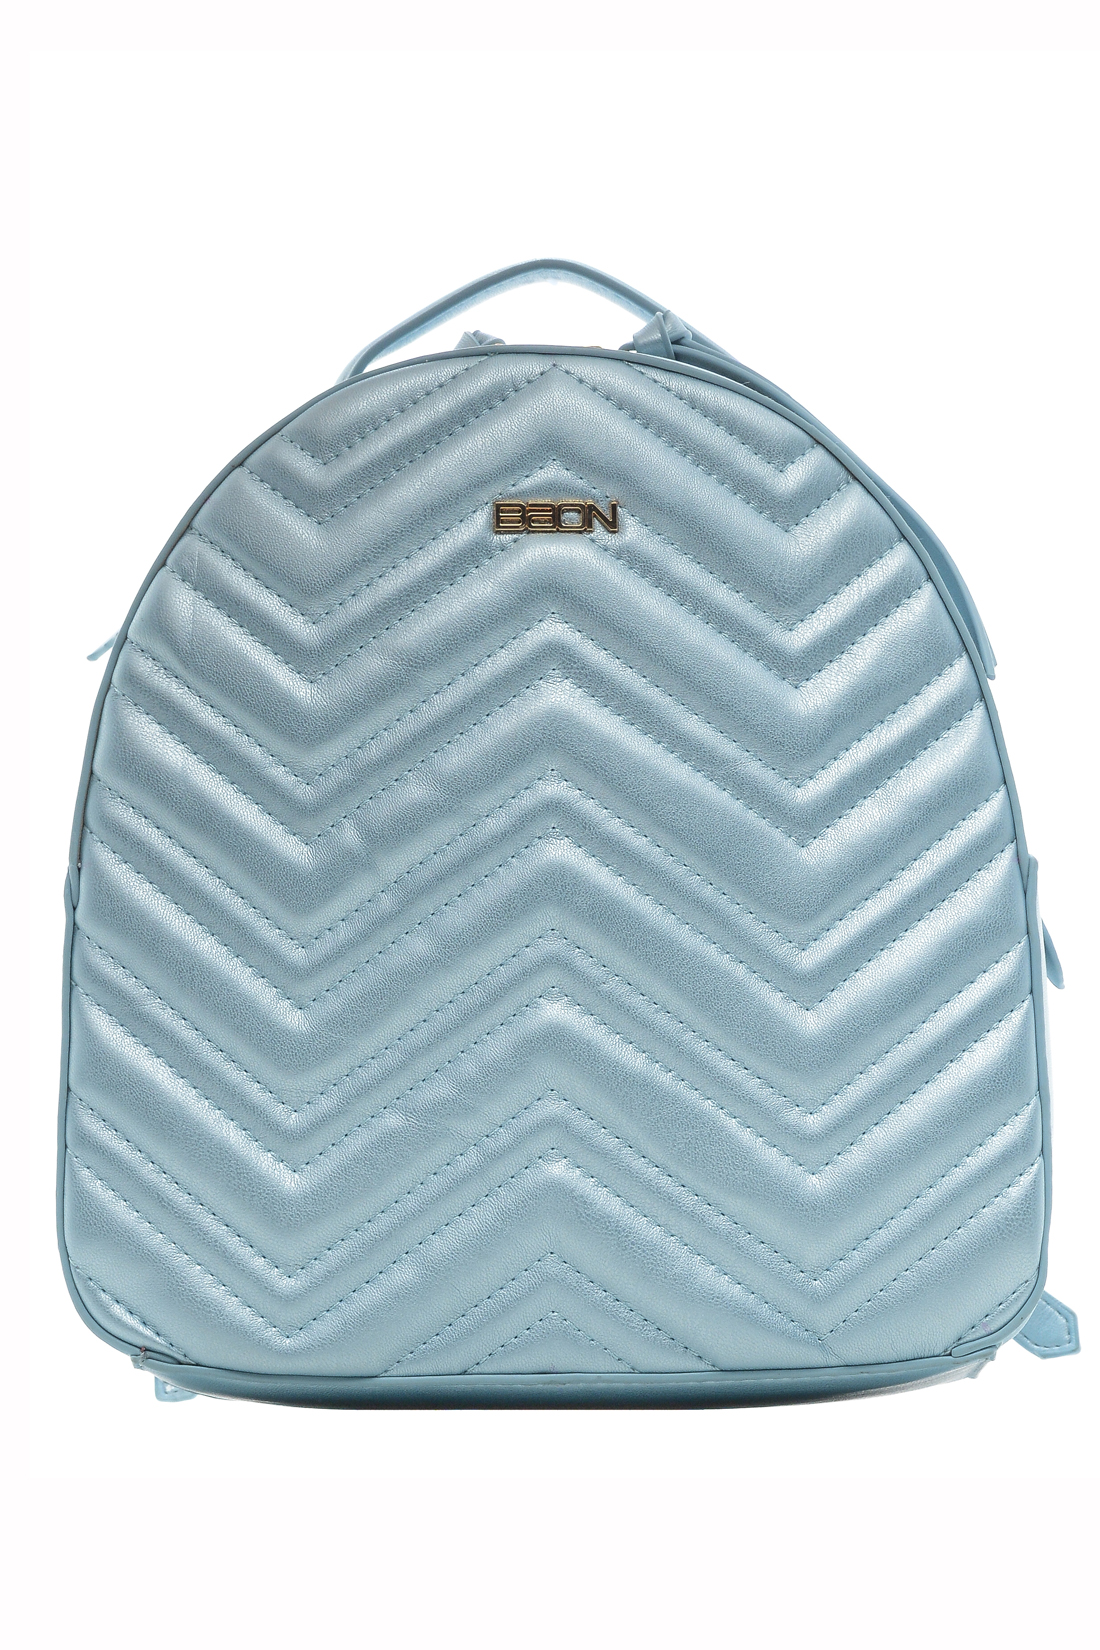 Рюкзак с перламутровым эффектом (арт. baon B379001), размер Без/раз, цвет голубой